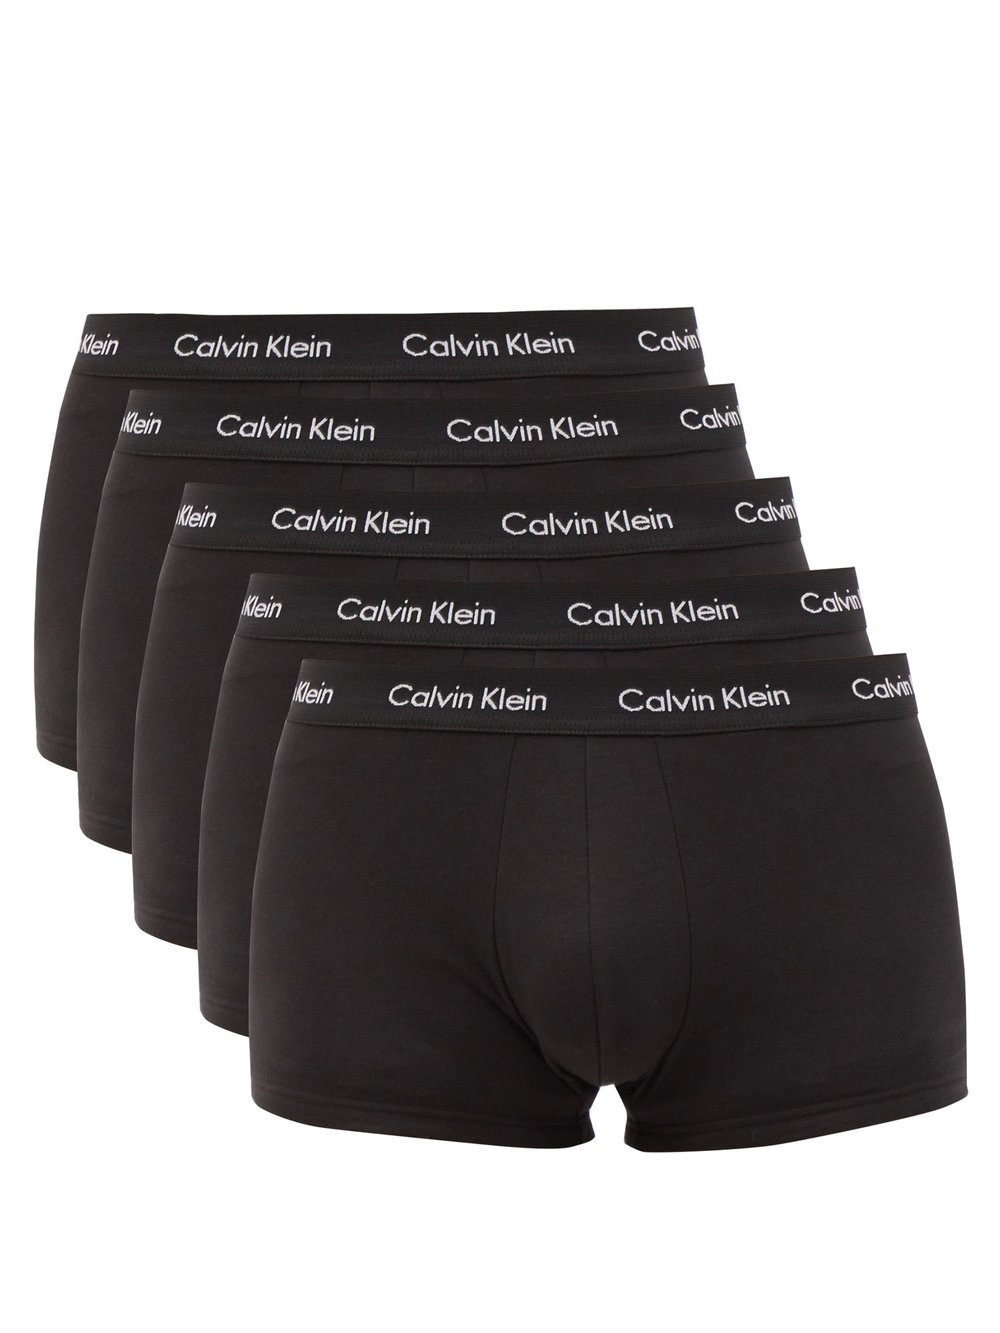 Комплект из пяти коротких трусов-боксеров. Calvin Klein Underwear, черный